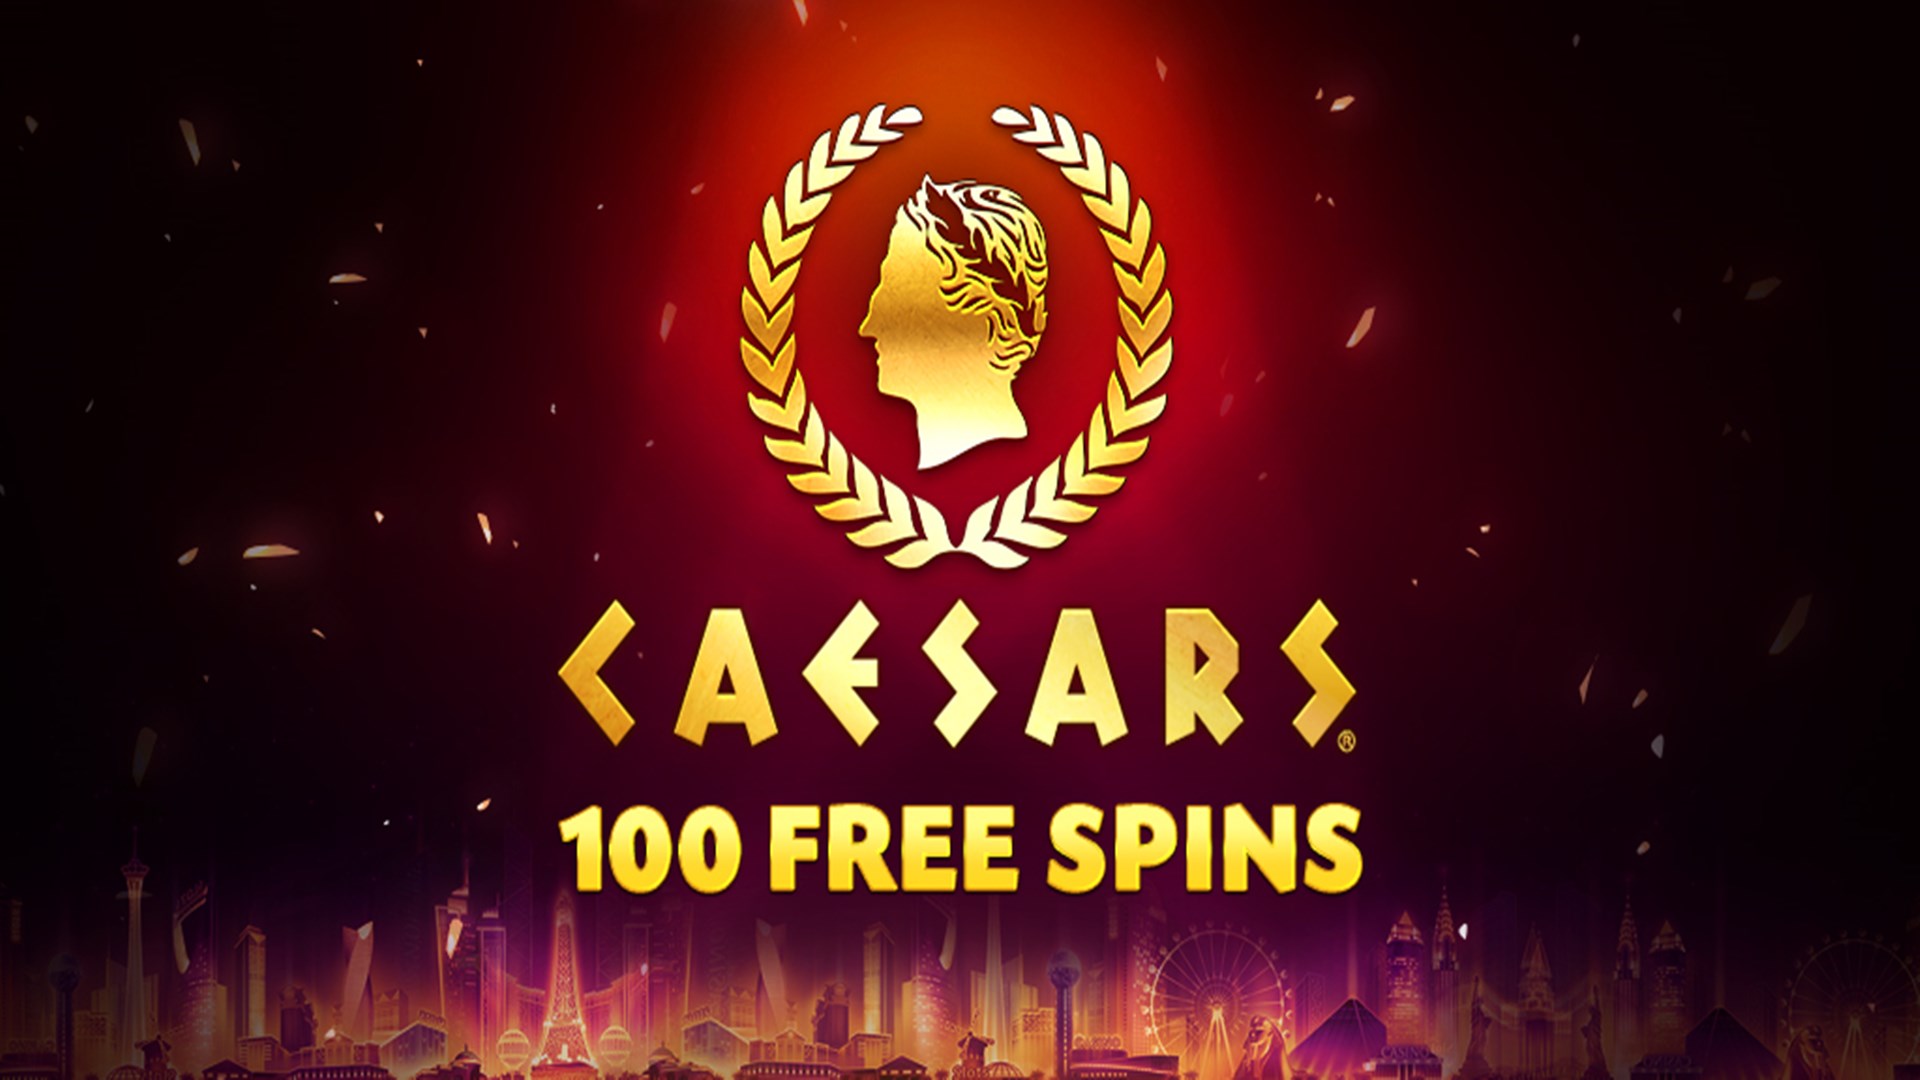 Caesars Slots Free Casino